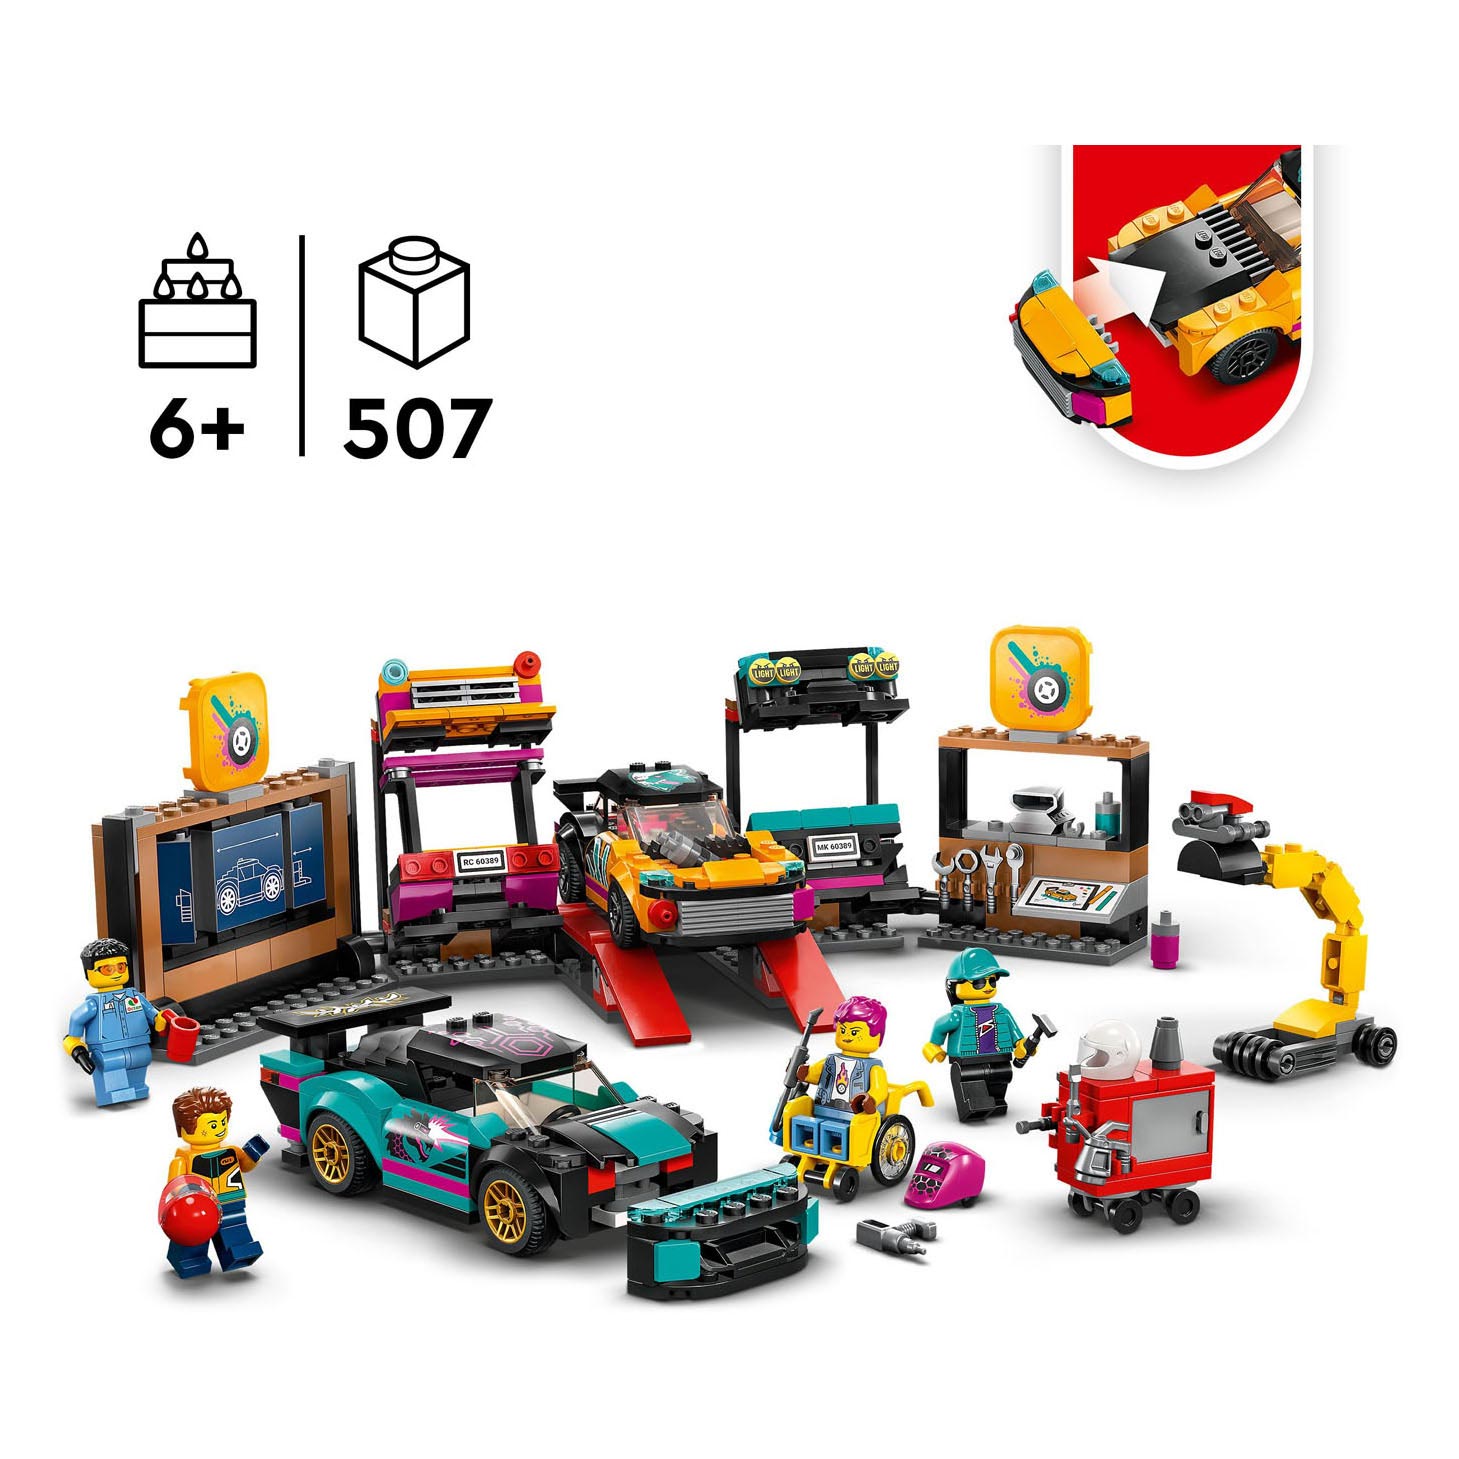 LEGO City 60389 Garage de voiture personnalisable